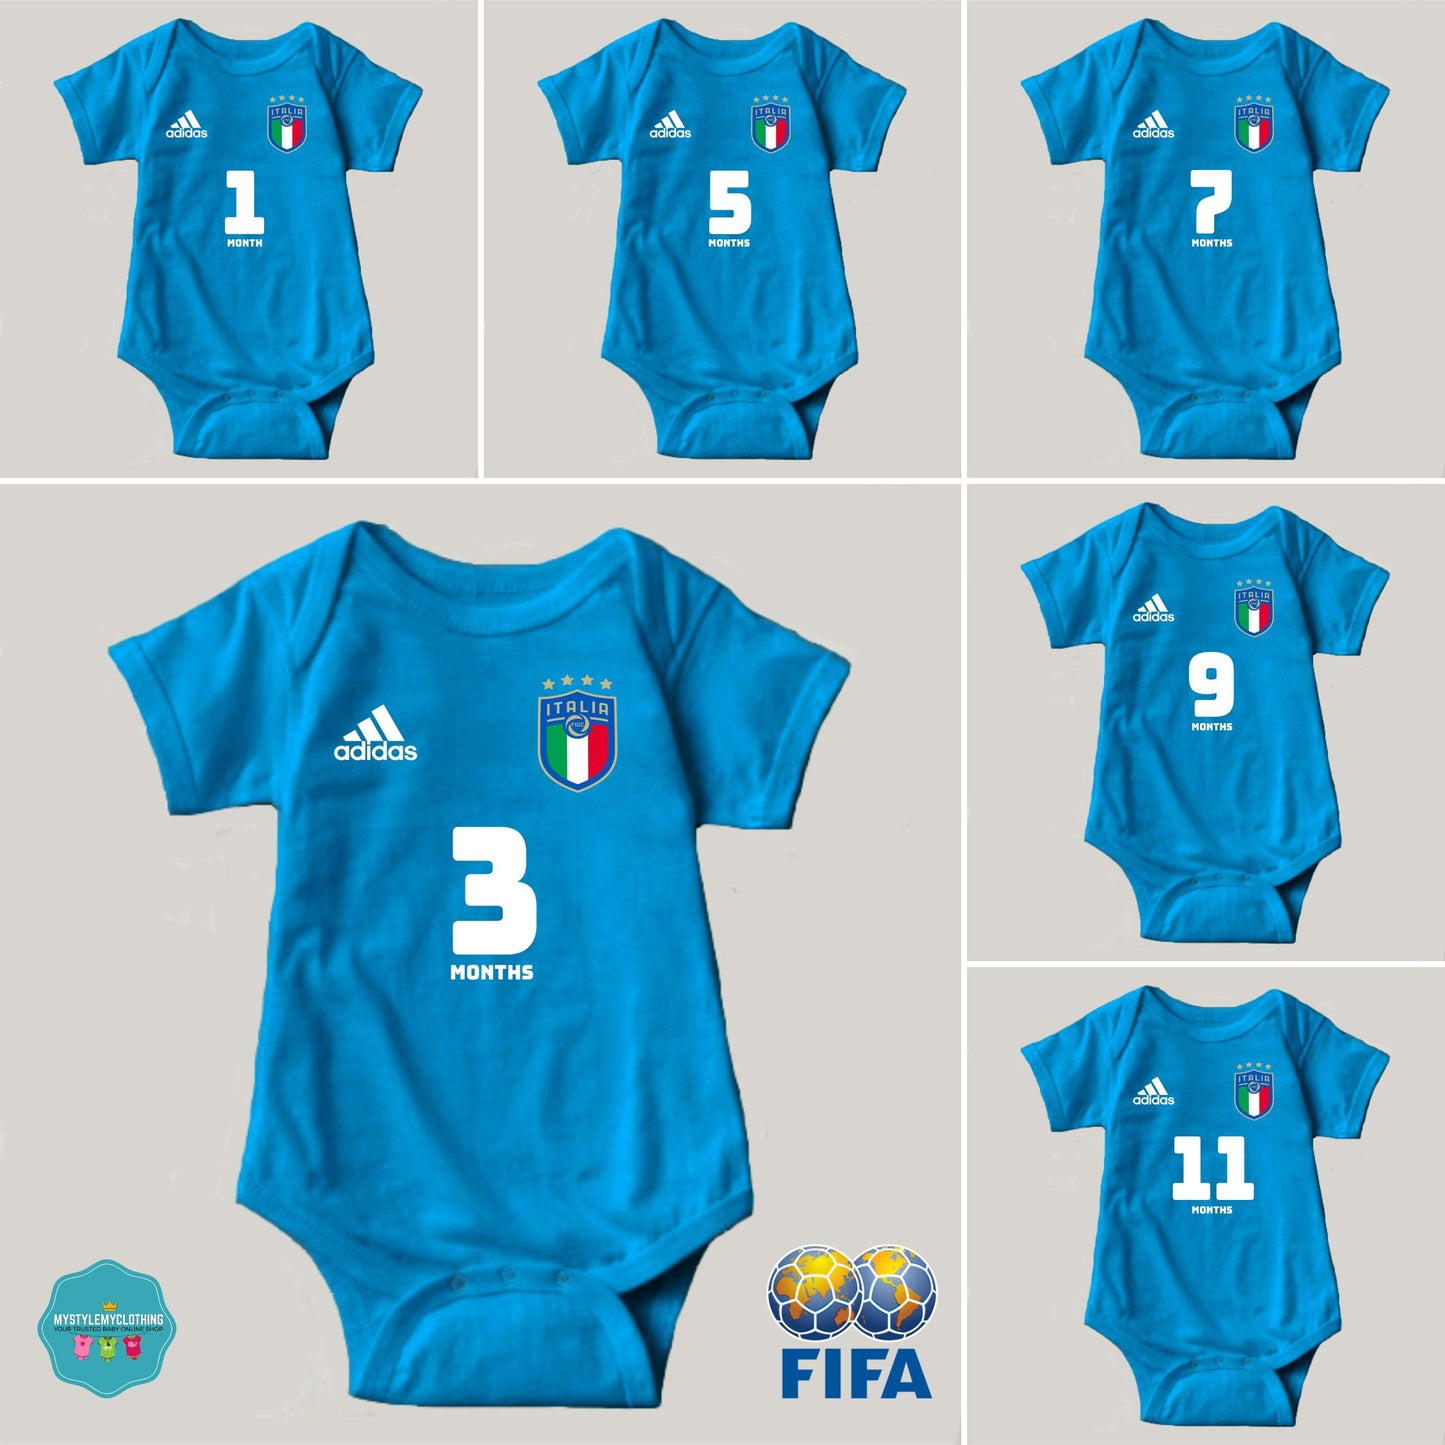 Baby FIFA Soccer Football Jersey Onesies - Italia